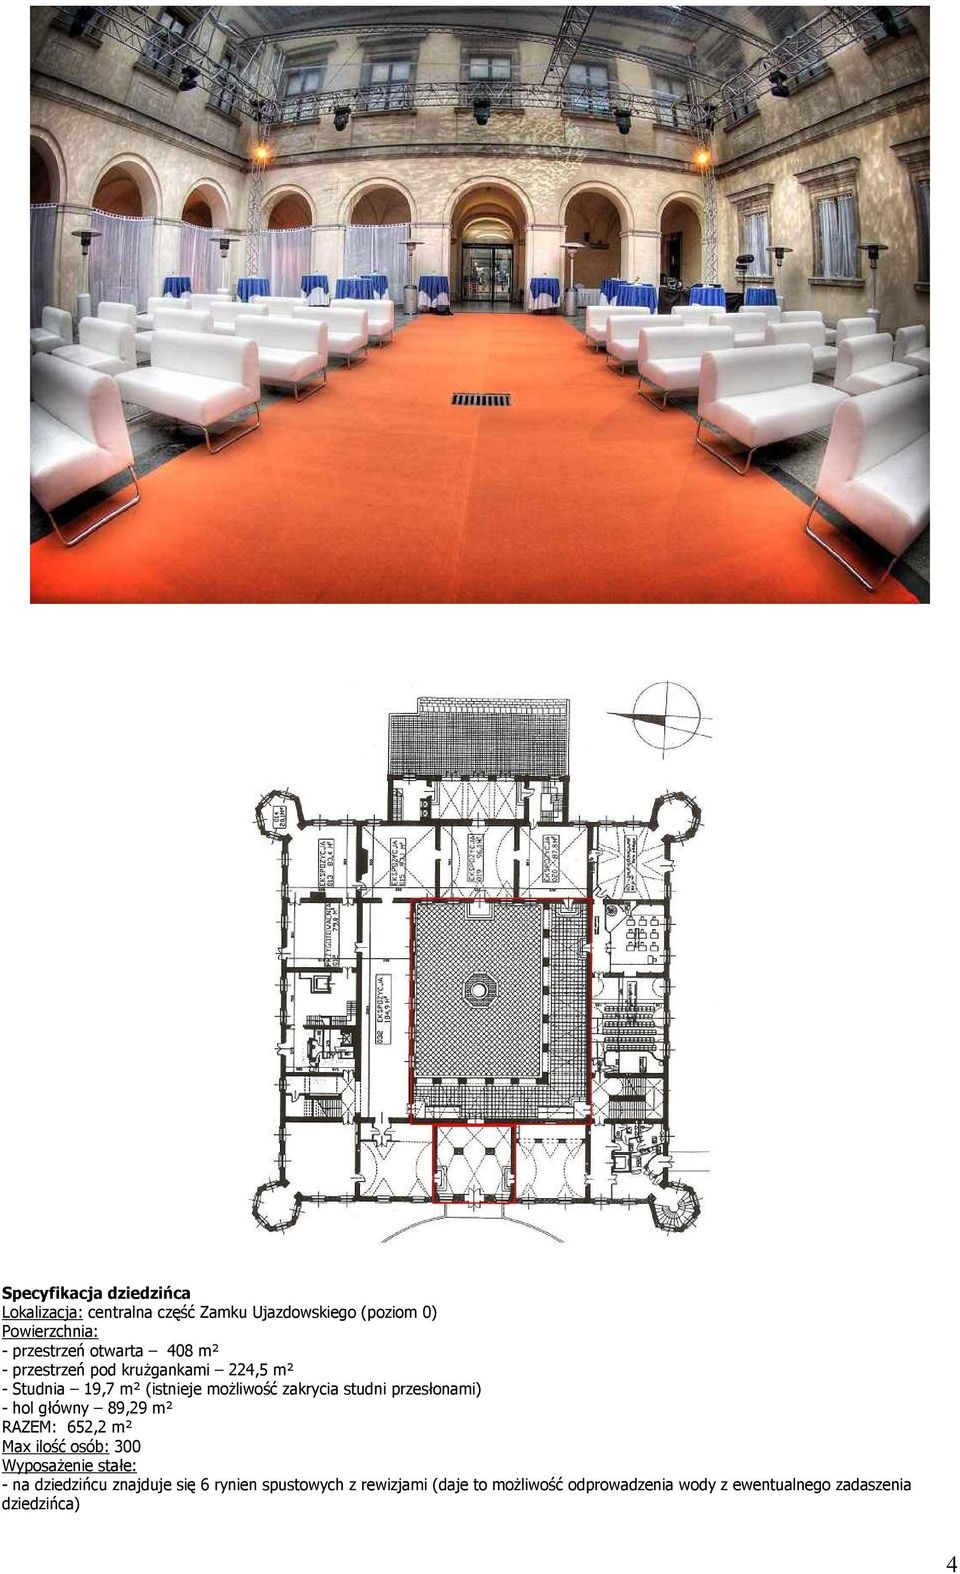 przesłonami) - hol główny 89,29 m² RAZEM: 652,2 m² Max ilość osób: 300 Wyposażenie stałe: - na dziedzińcu